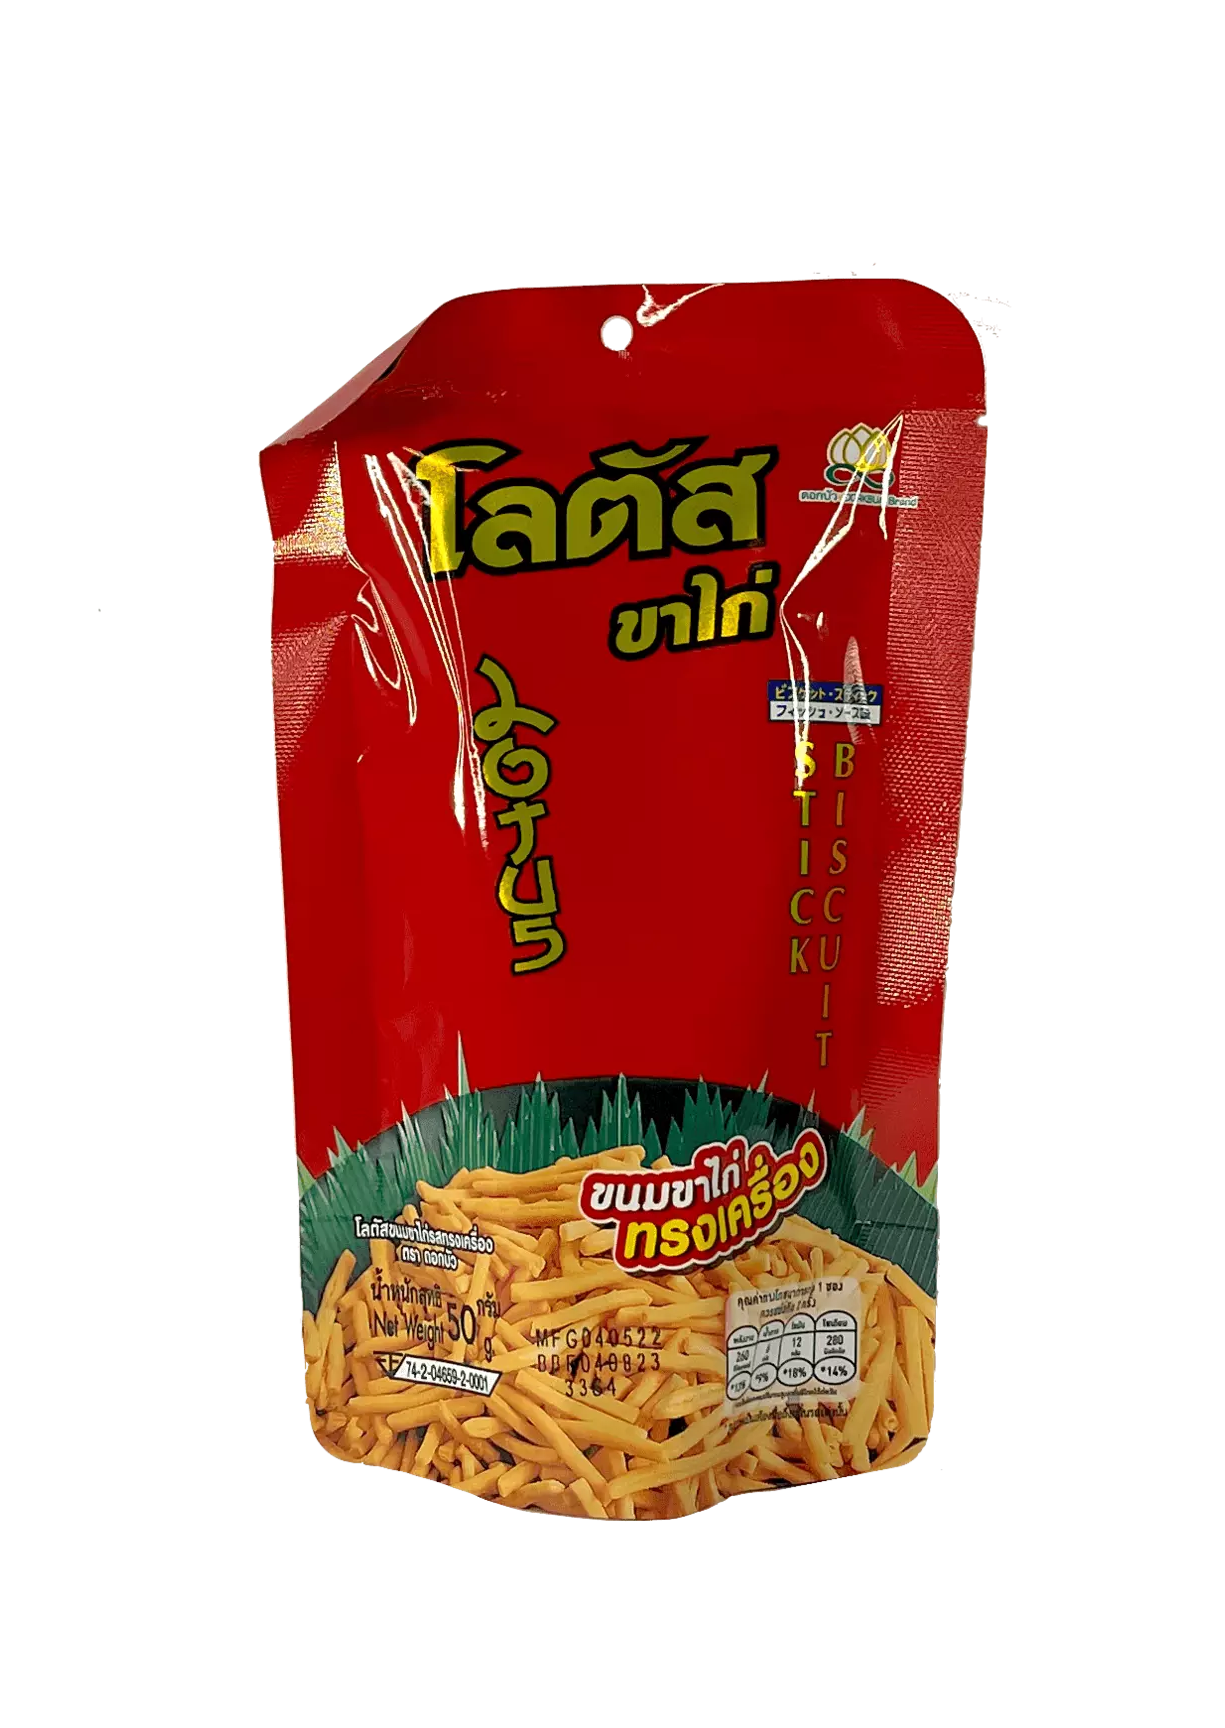 小脆饼条 Song Krung 风味 55g Dorkbua 泰国